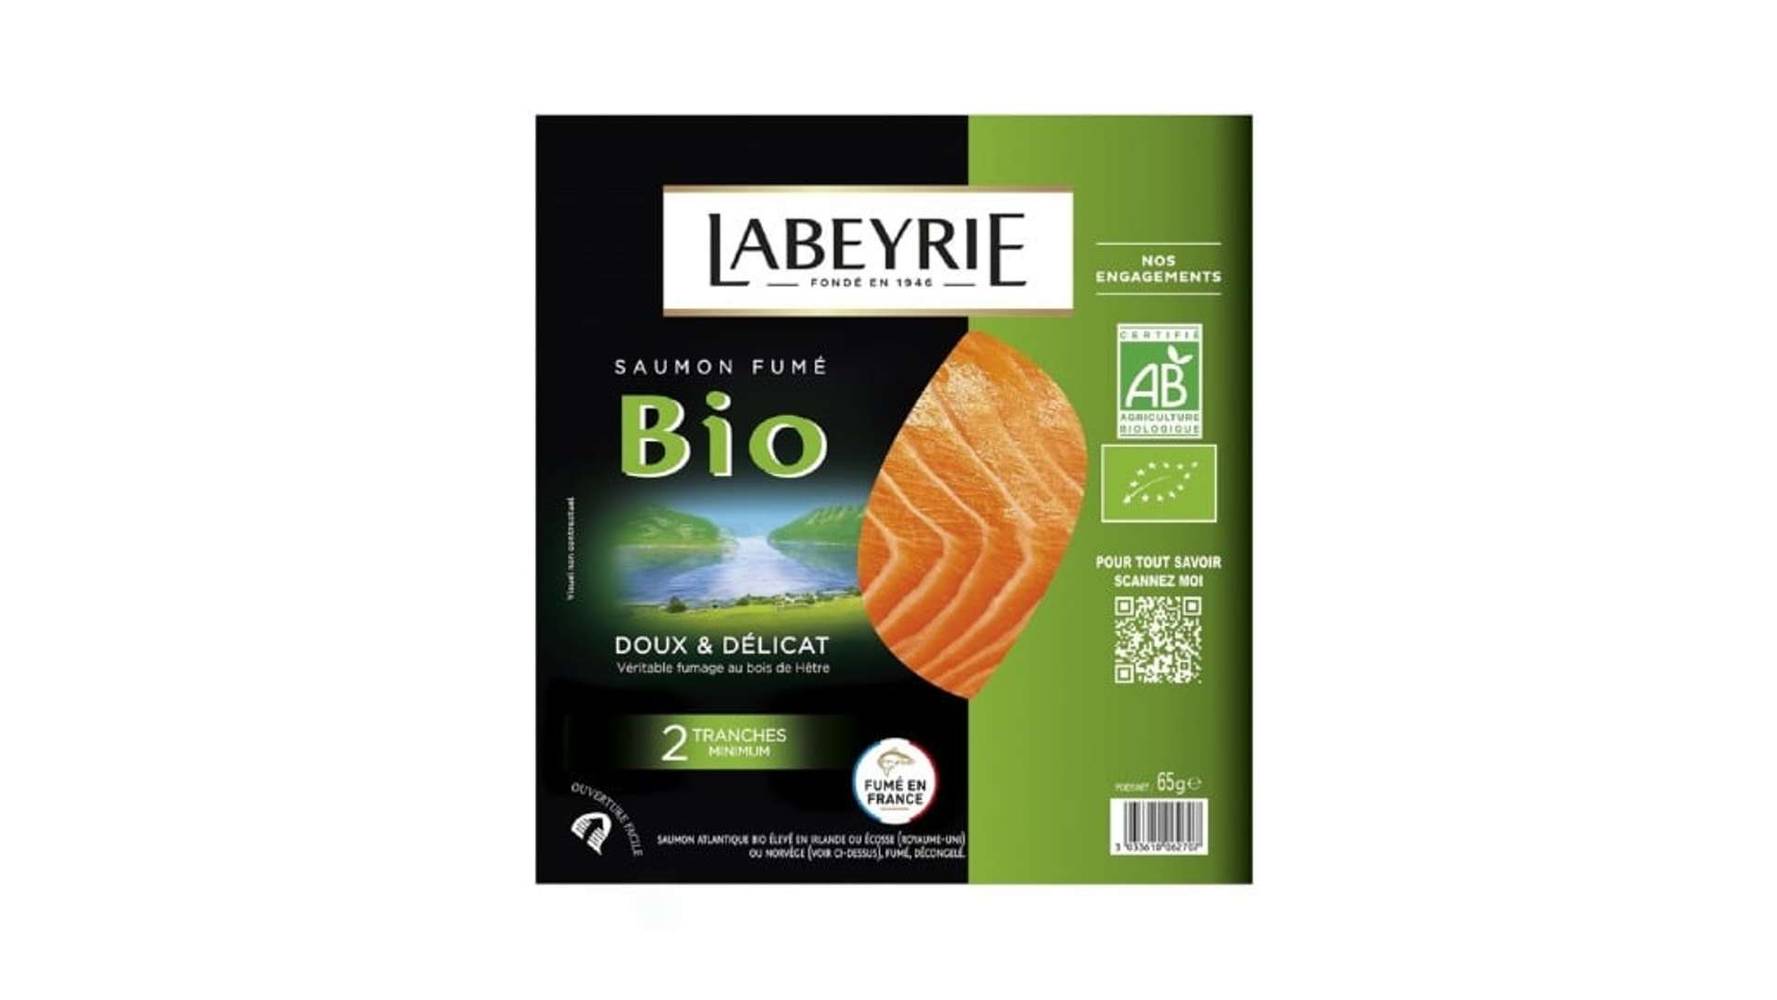 Labeyrie - Saumon fumé bio (2 pièces)